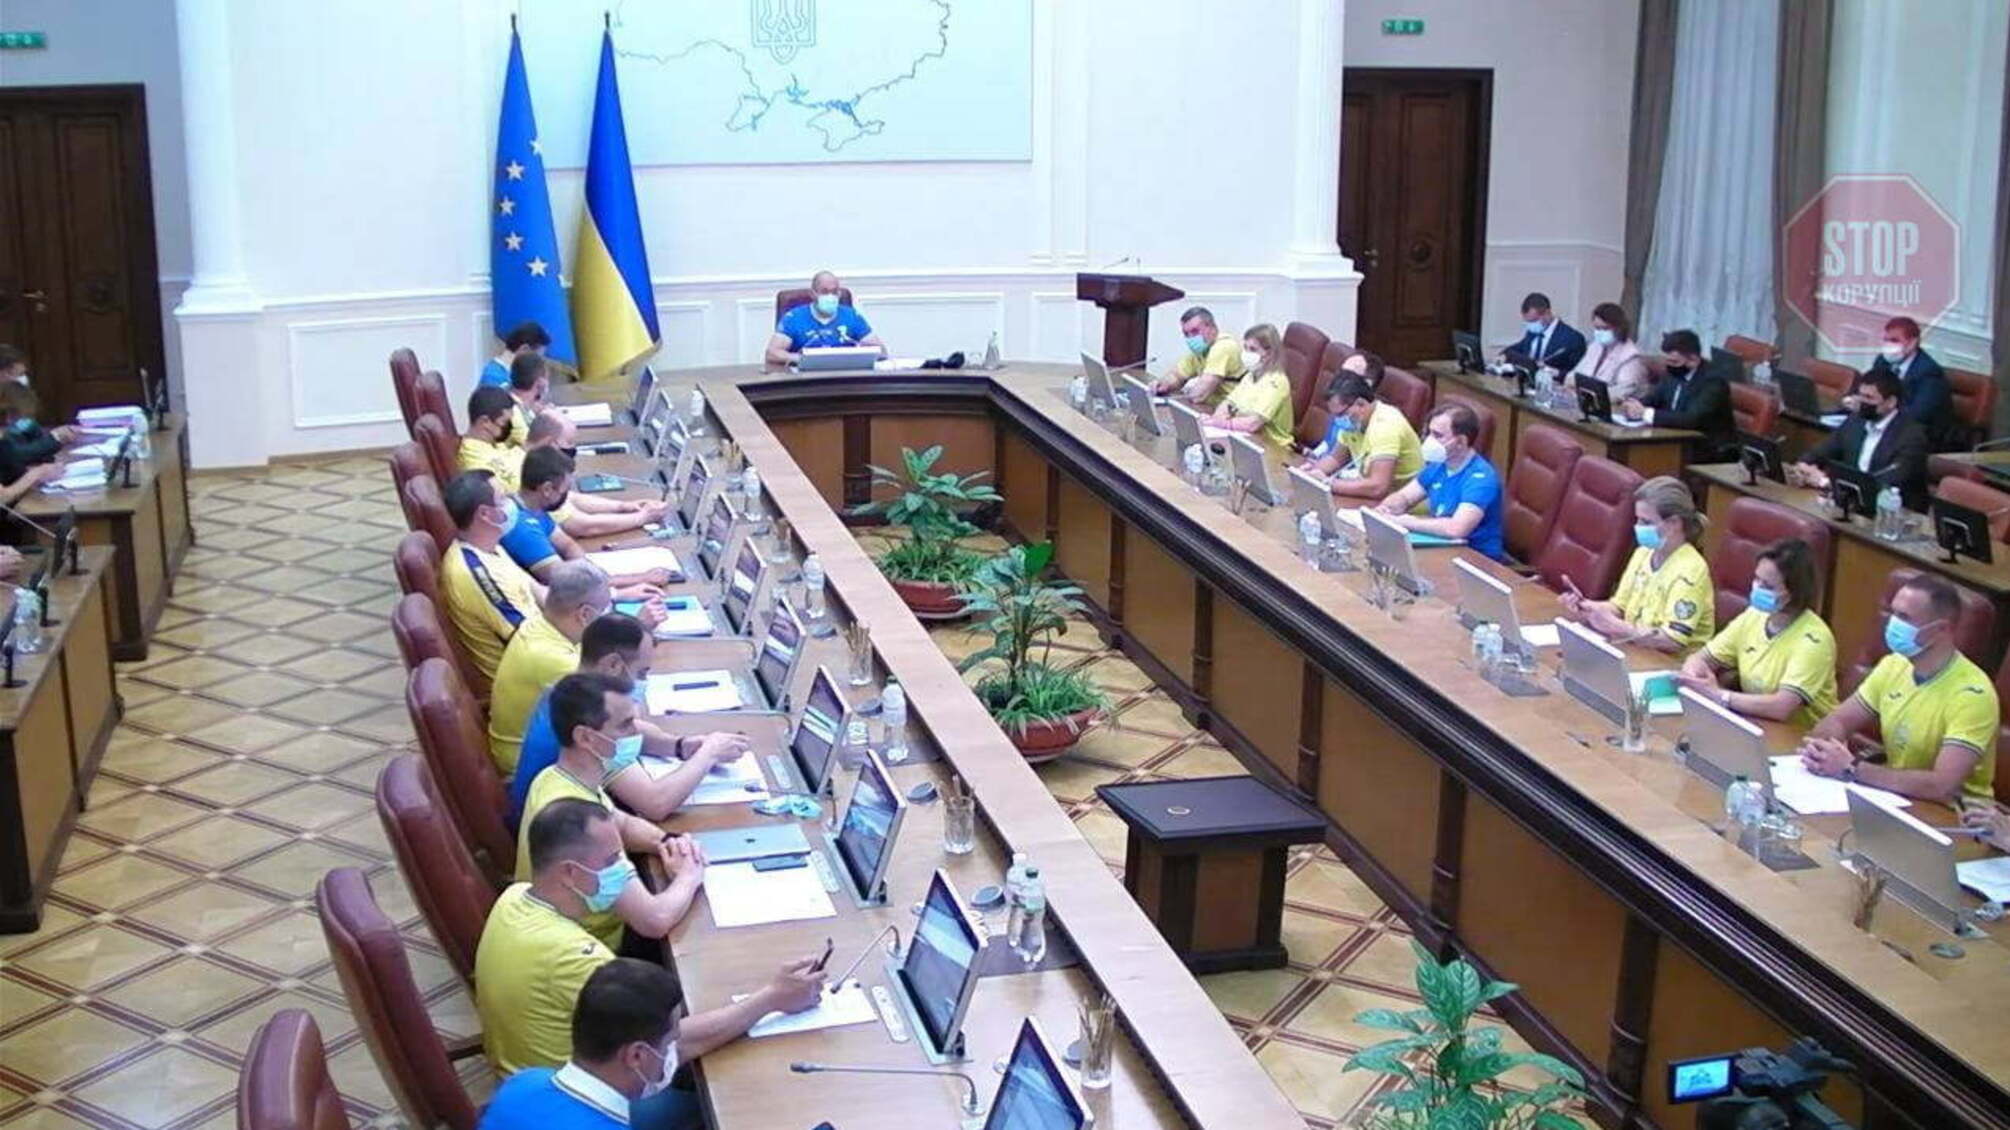 Міністри зібралися на засідання Кабміну у формі української збірної (фото)